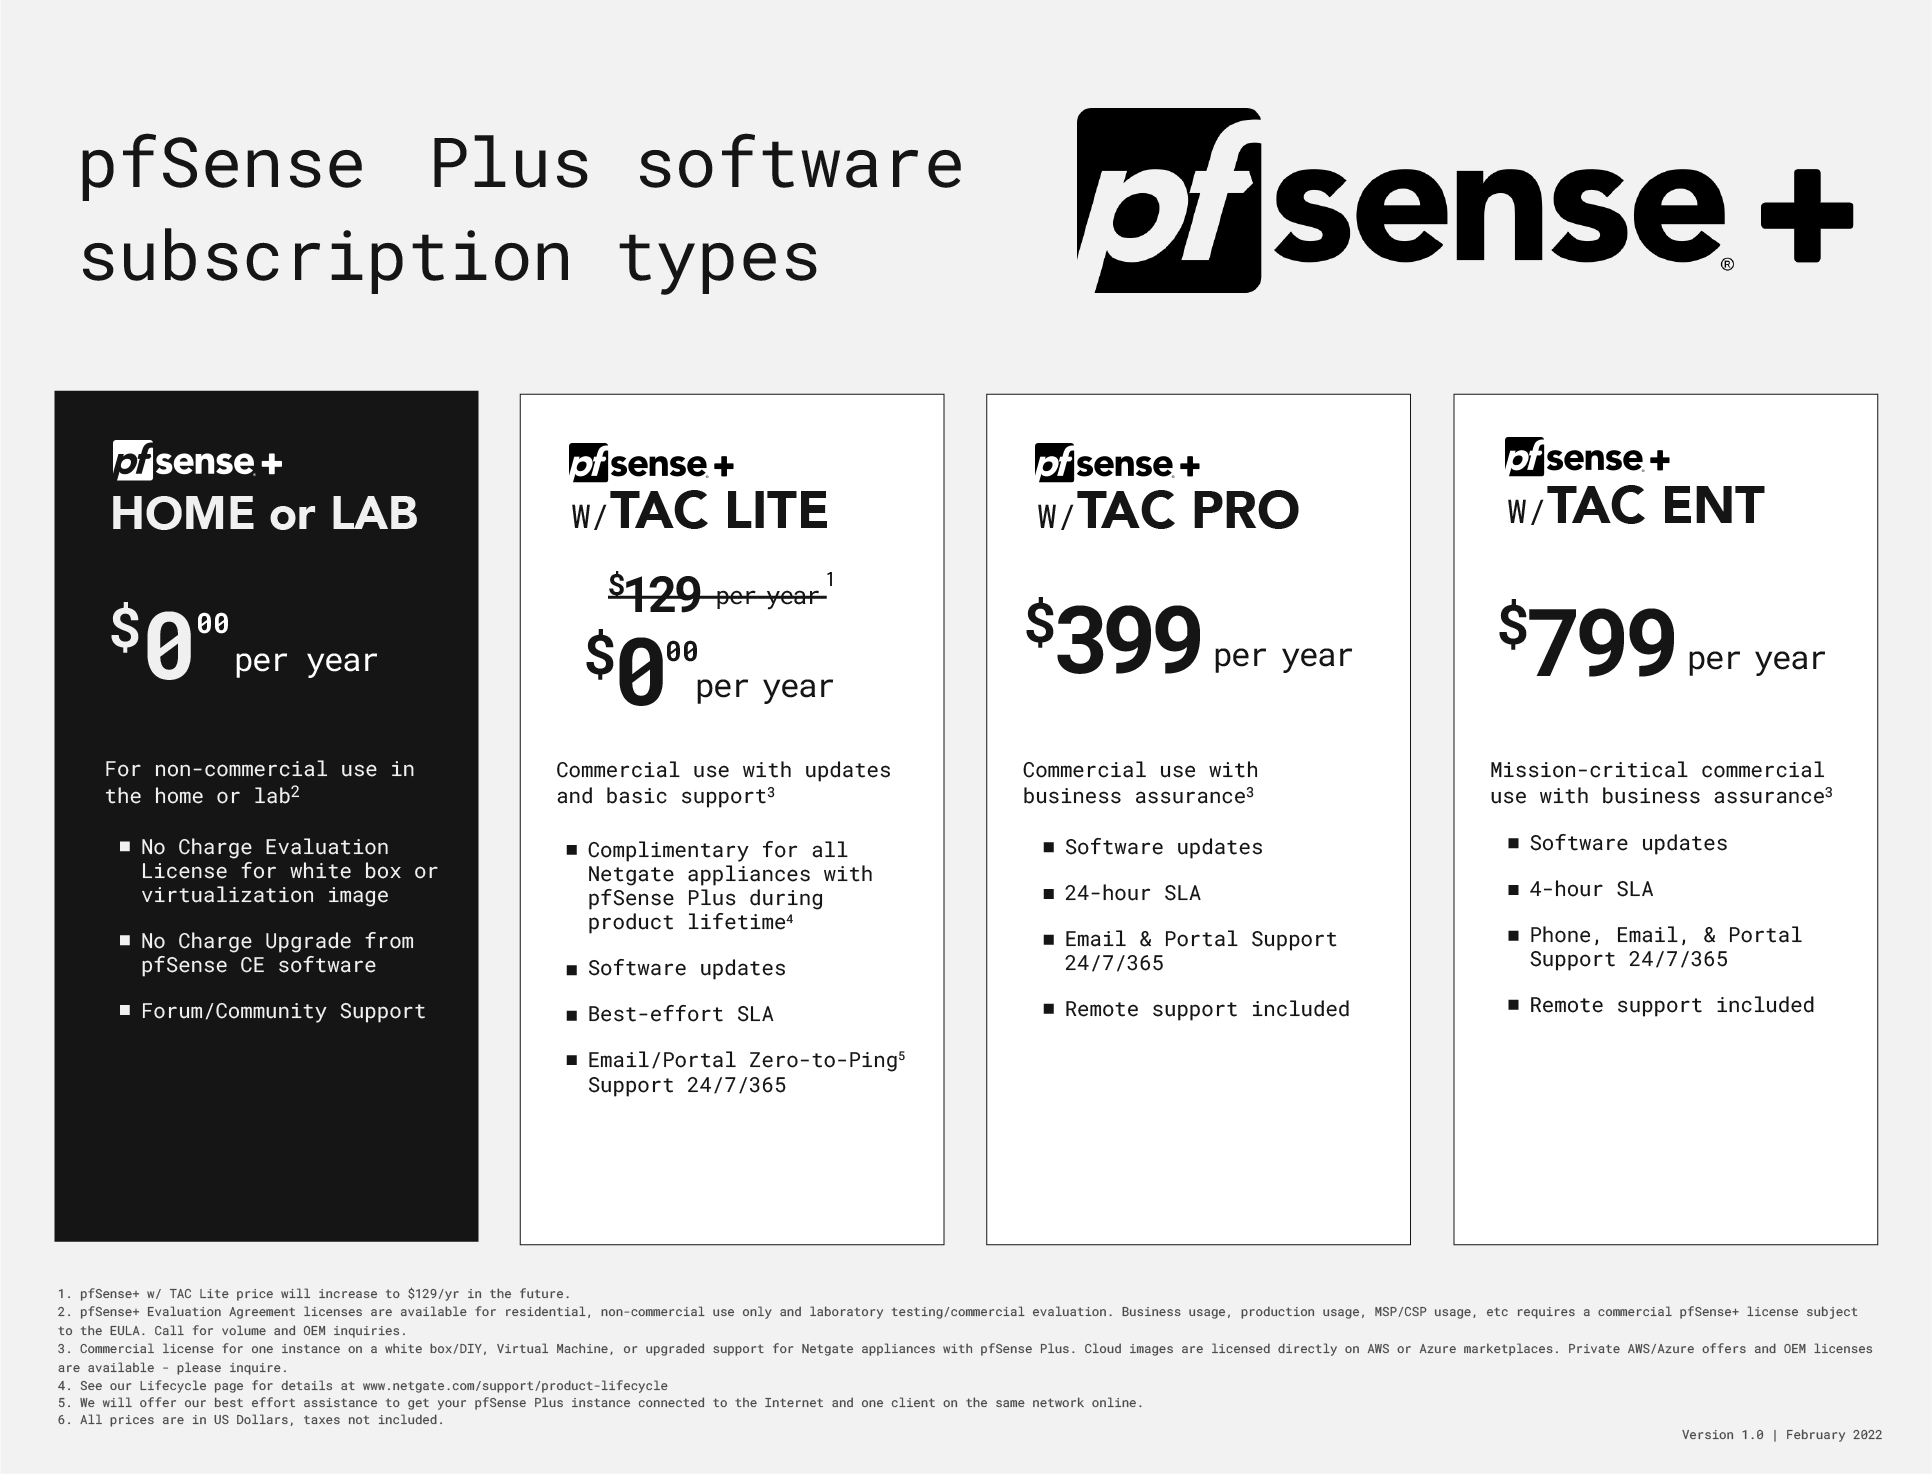 pfSense Plus subscription Table